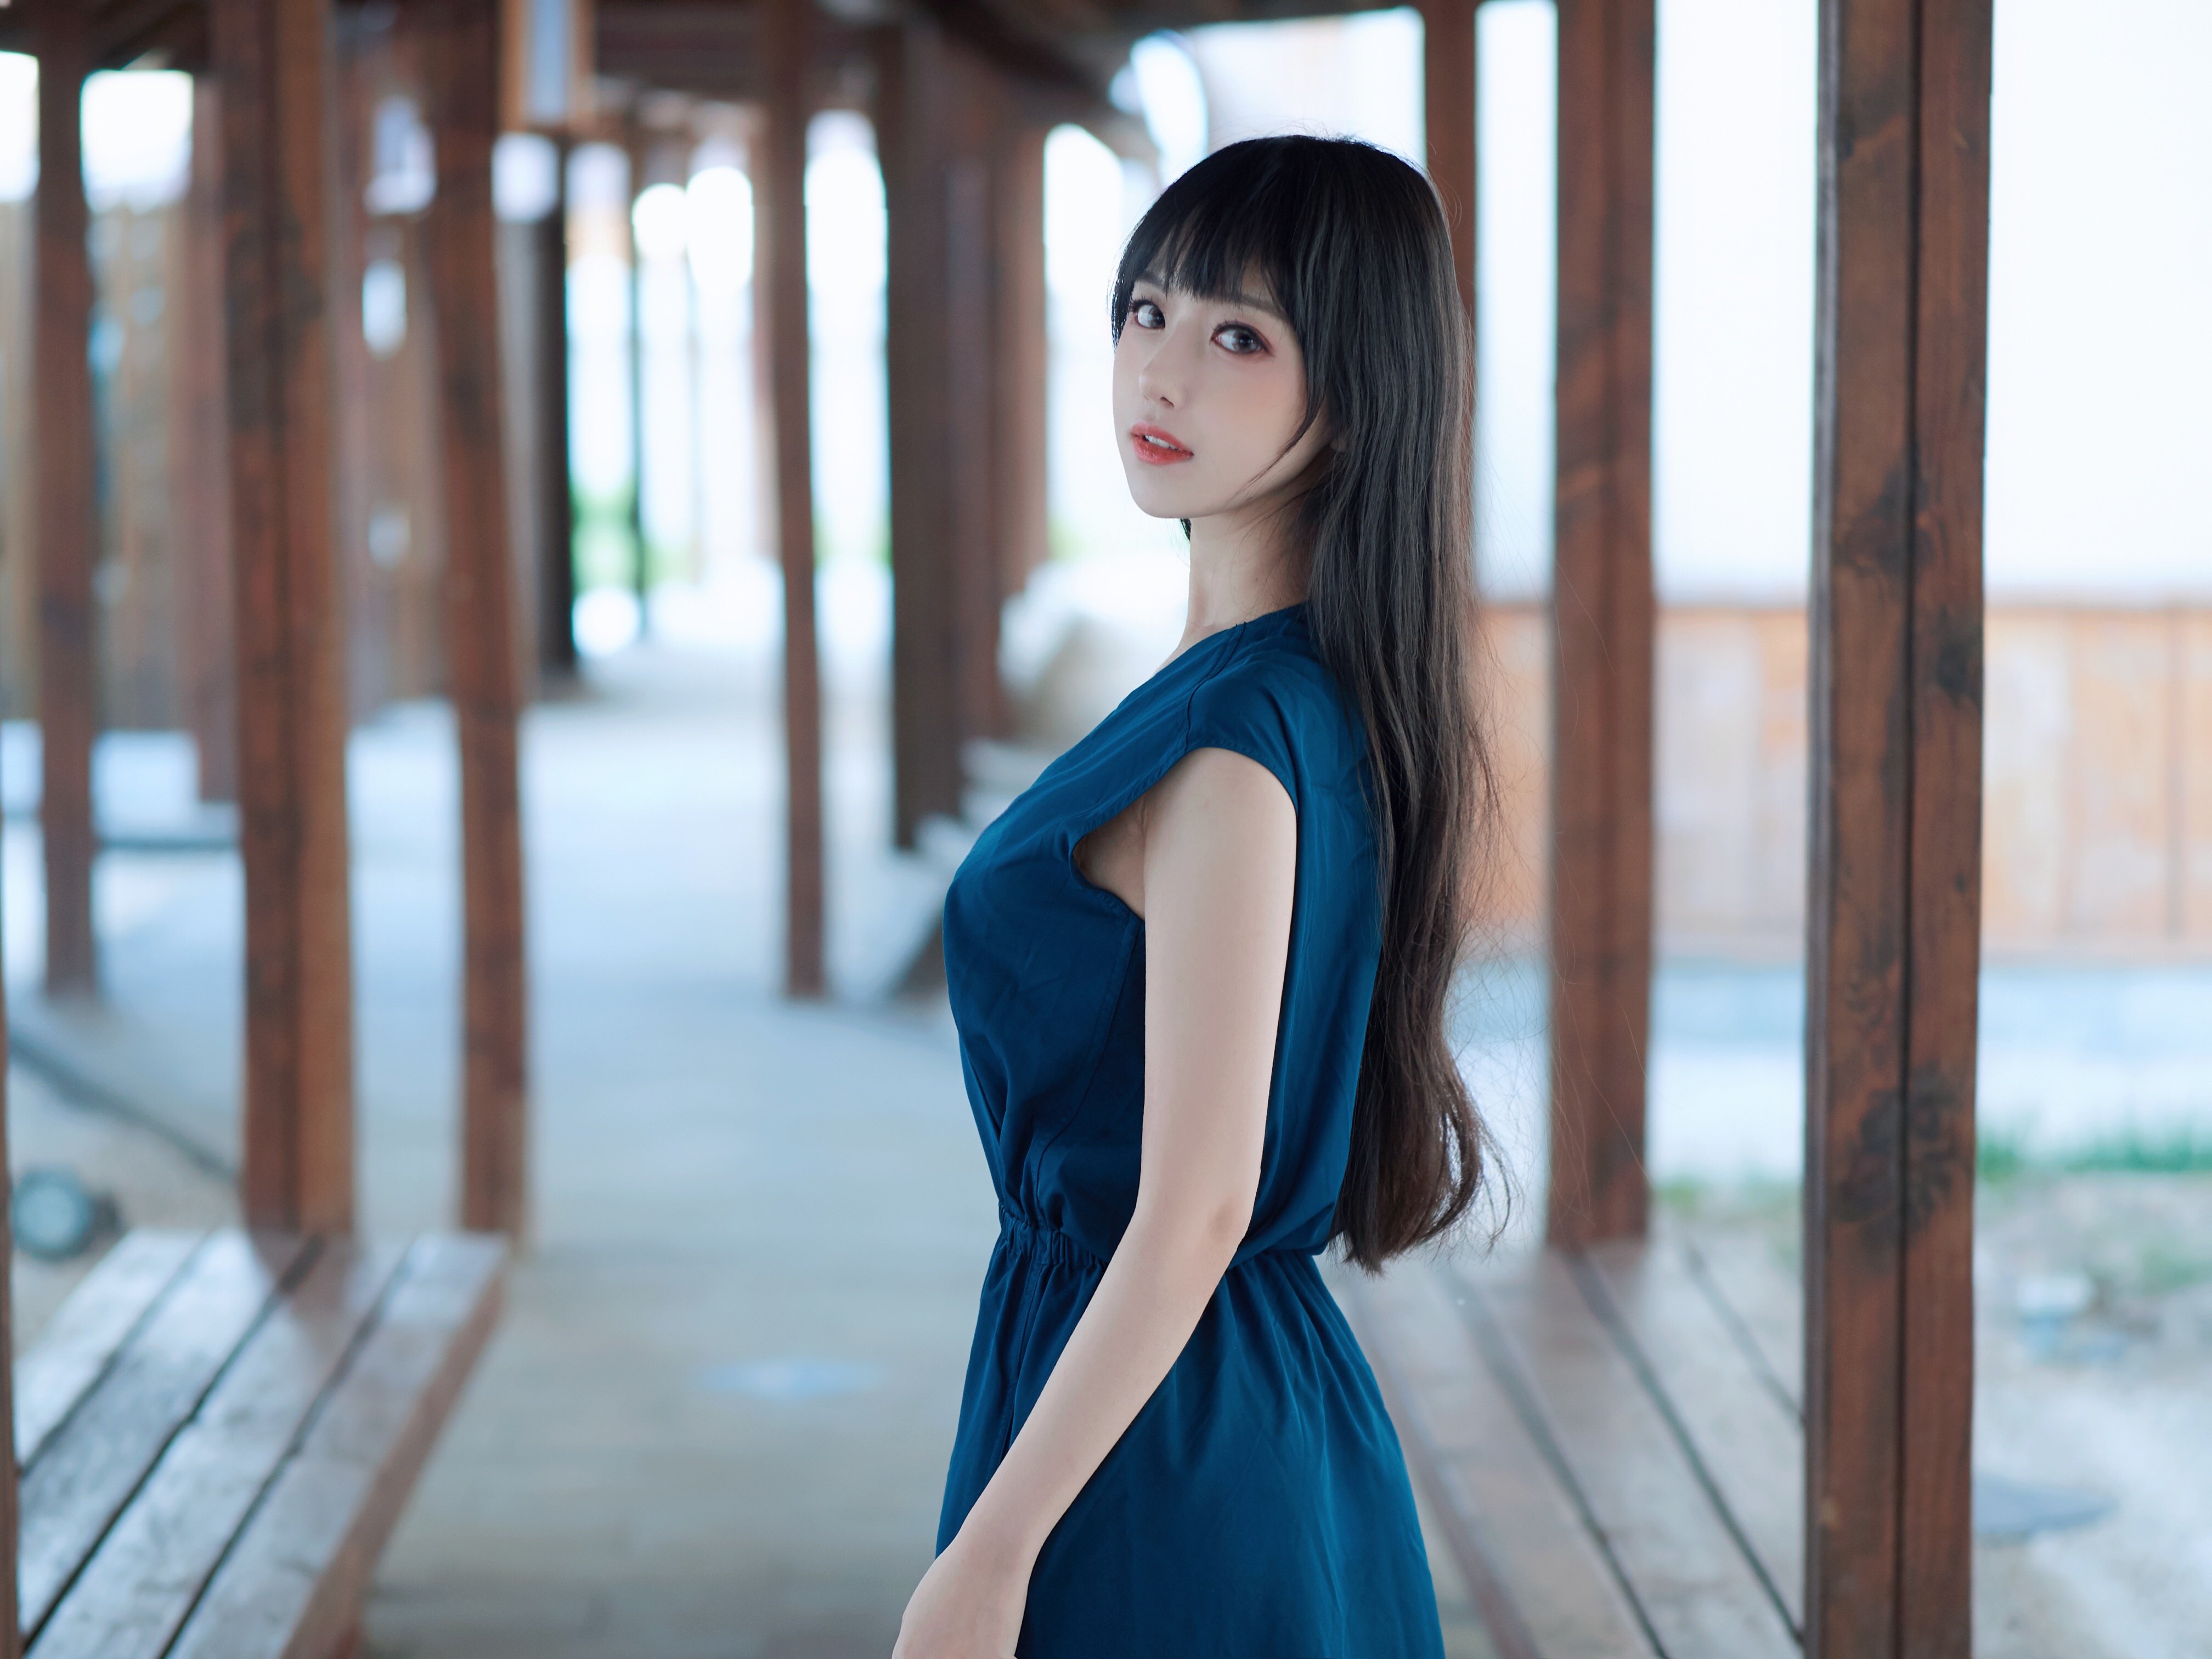 Asian Dress Outdoors Long Hair Black Hair Blue Dress Women Shika XiaoLu 4032x3024